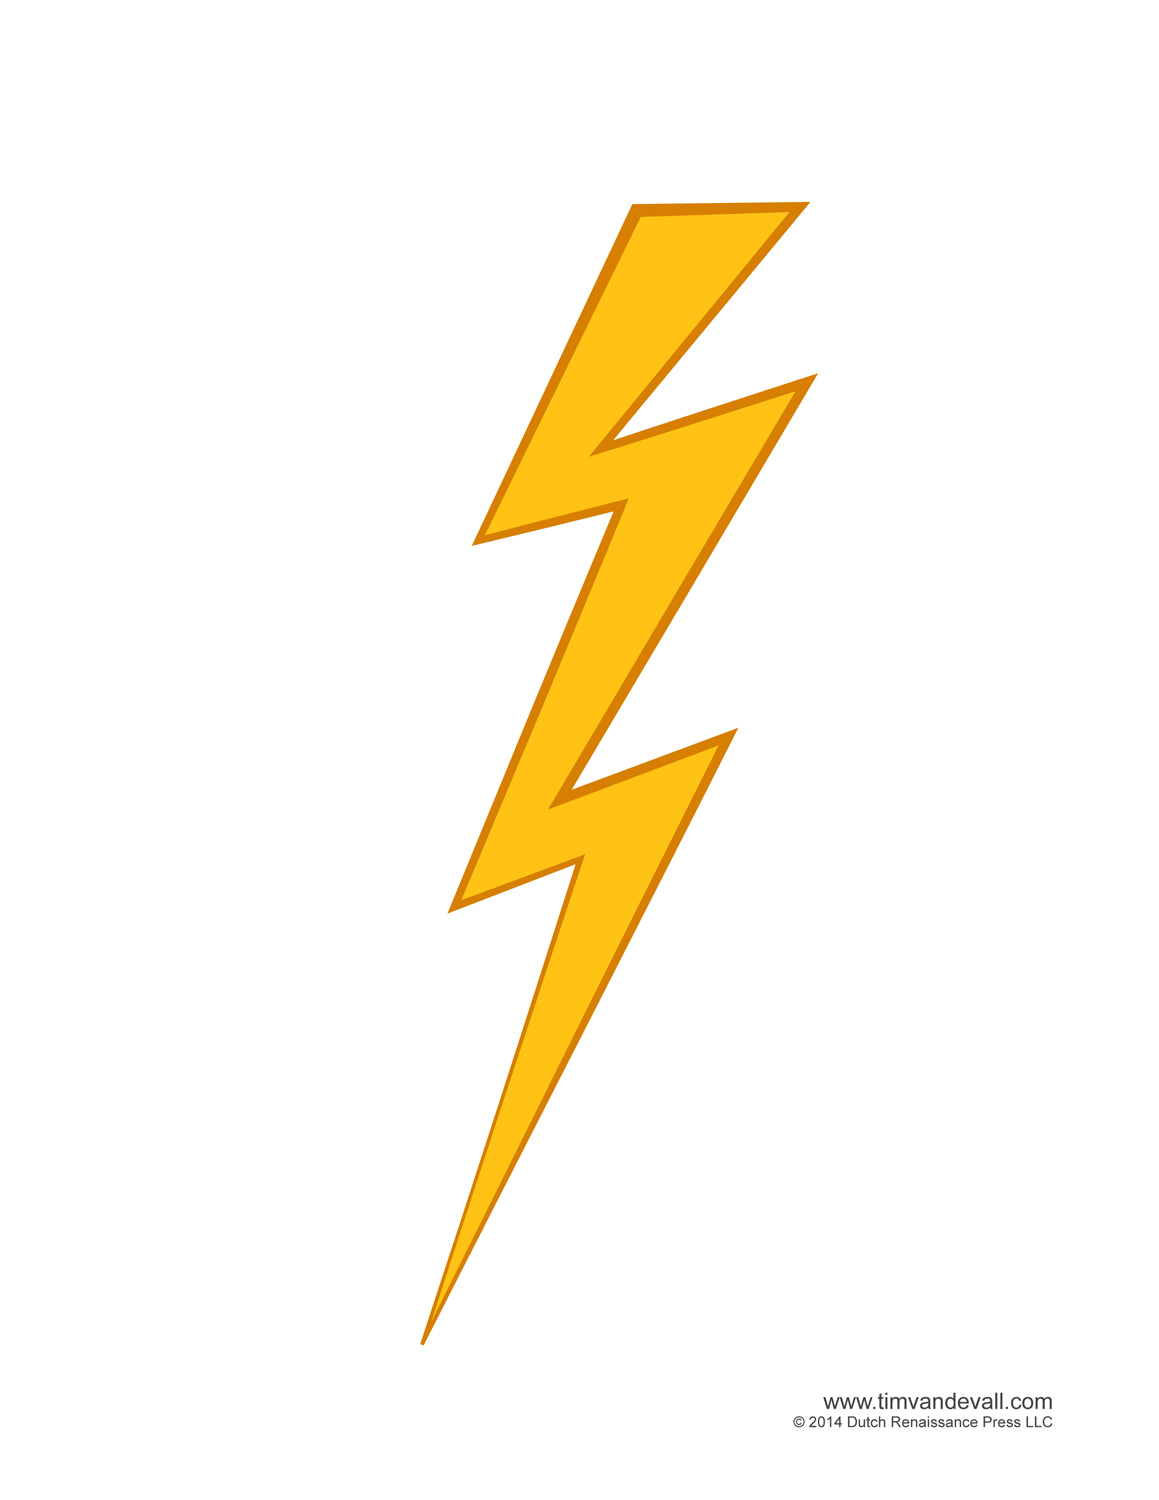 White lightning bolt clip art